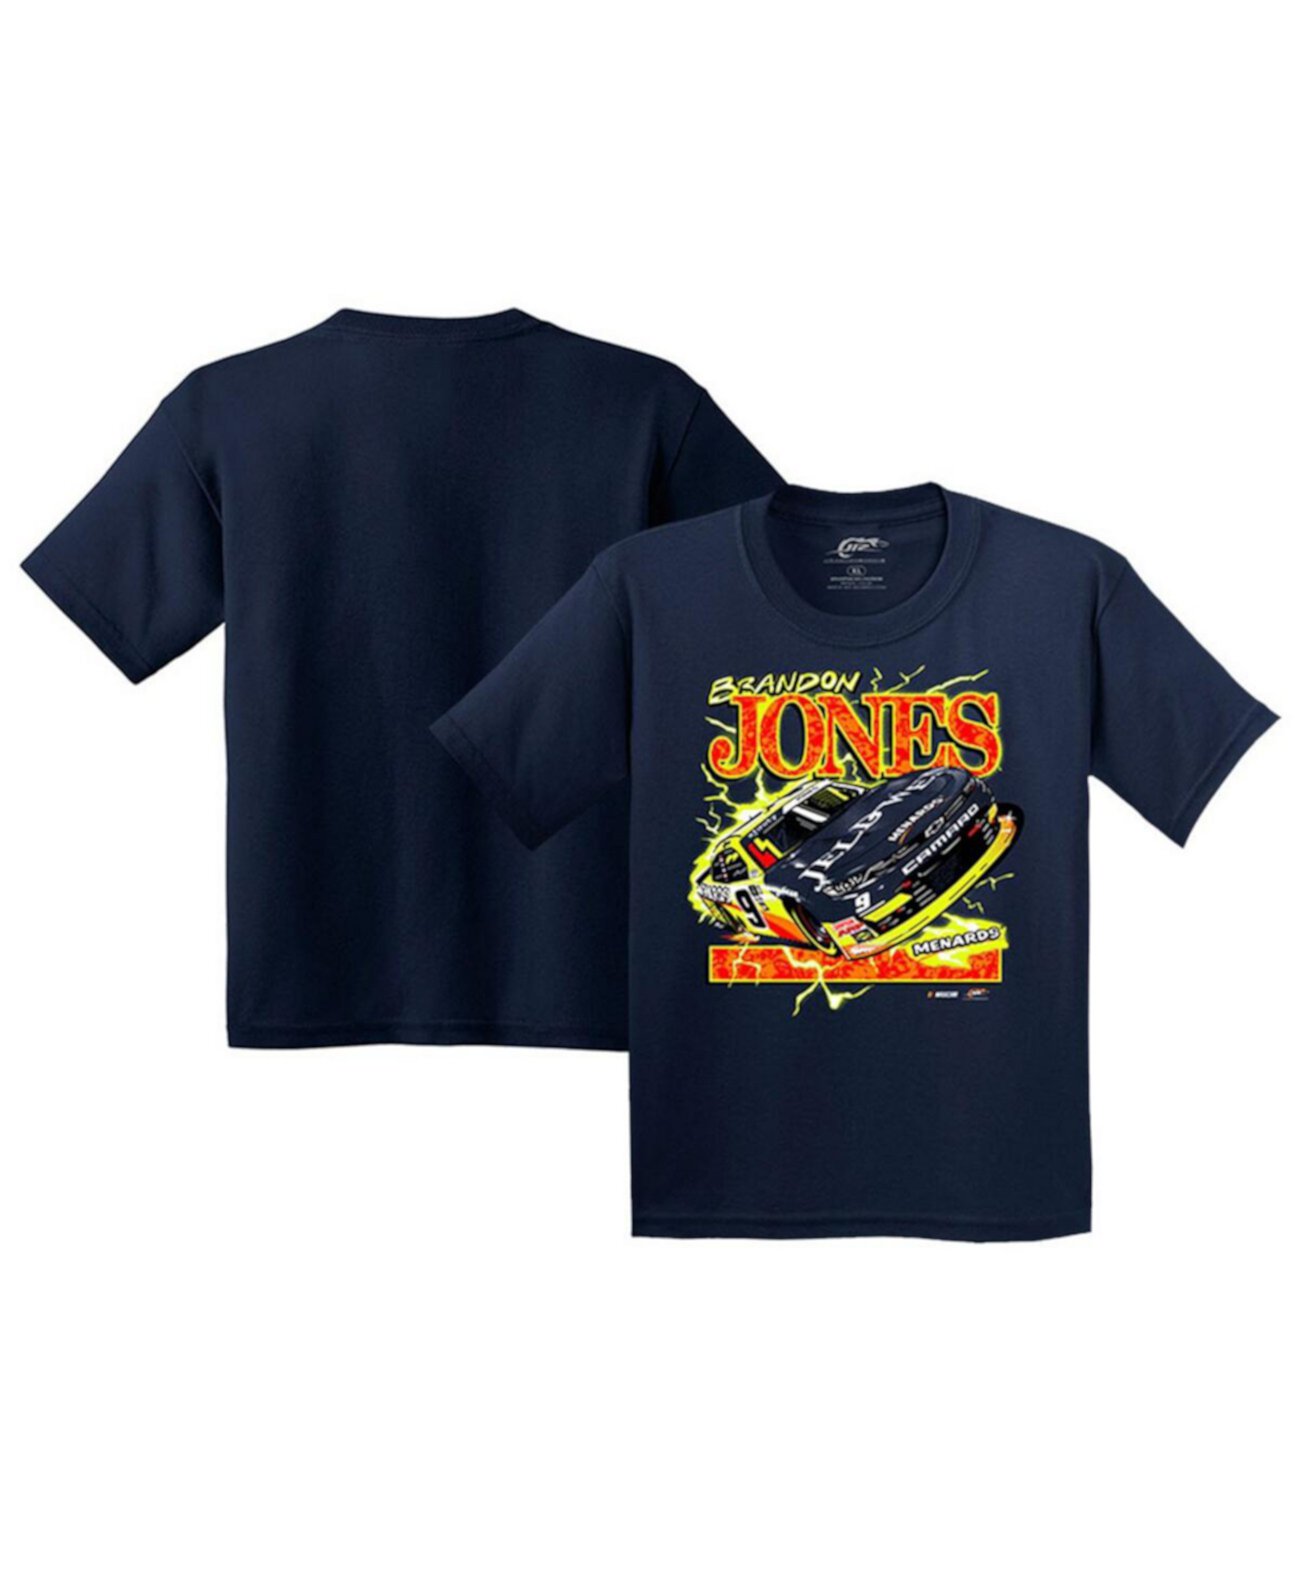 Темно-синяя футболка с изображением автомобиля Brandon Jones для мальчиков и девочек Big Boys and Girls JR Motorsports Official Team Apparel